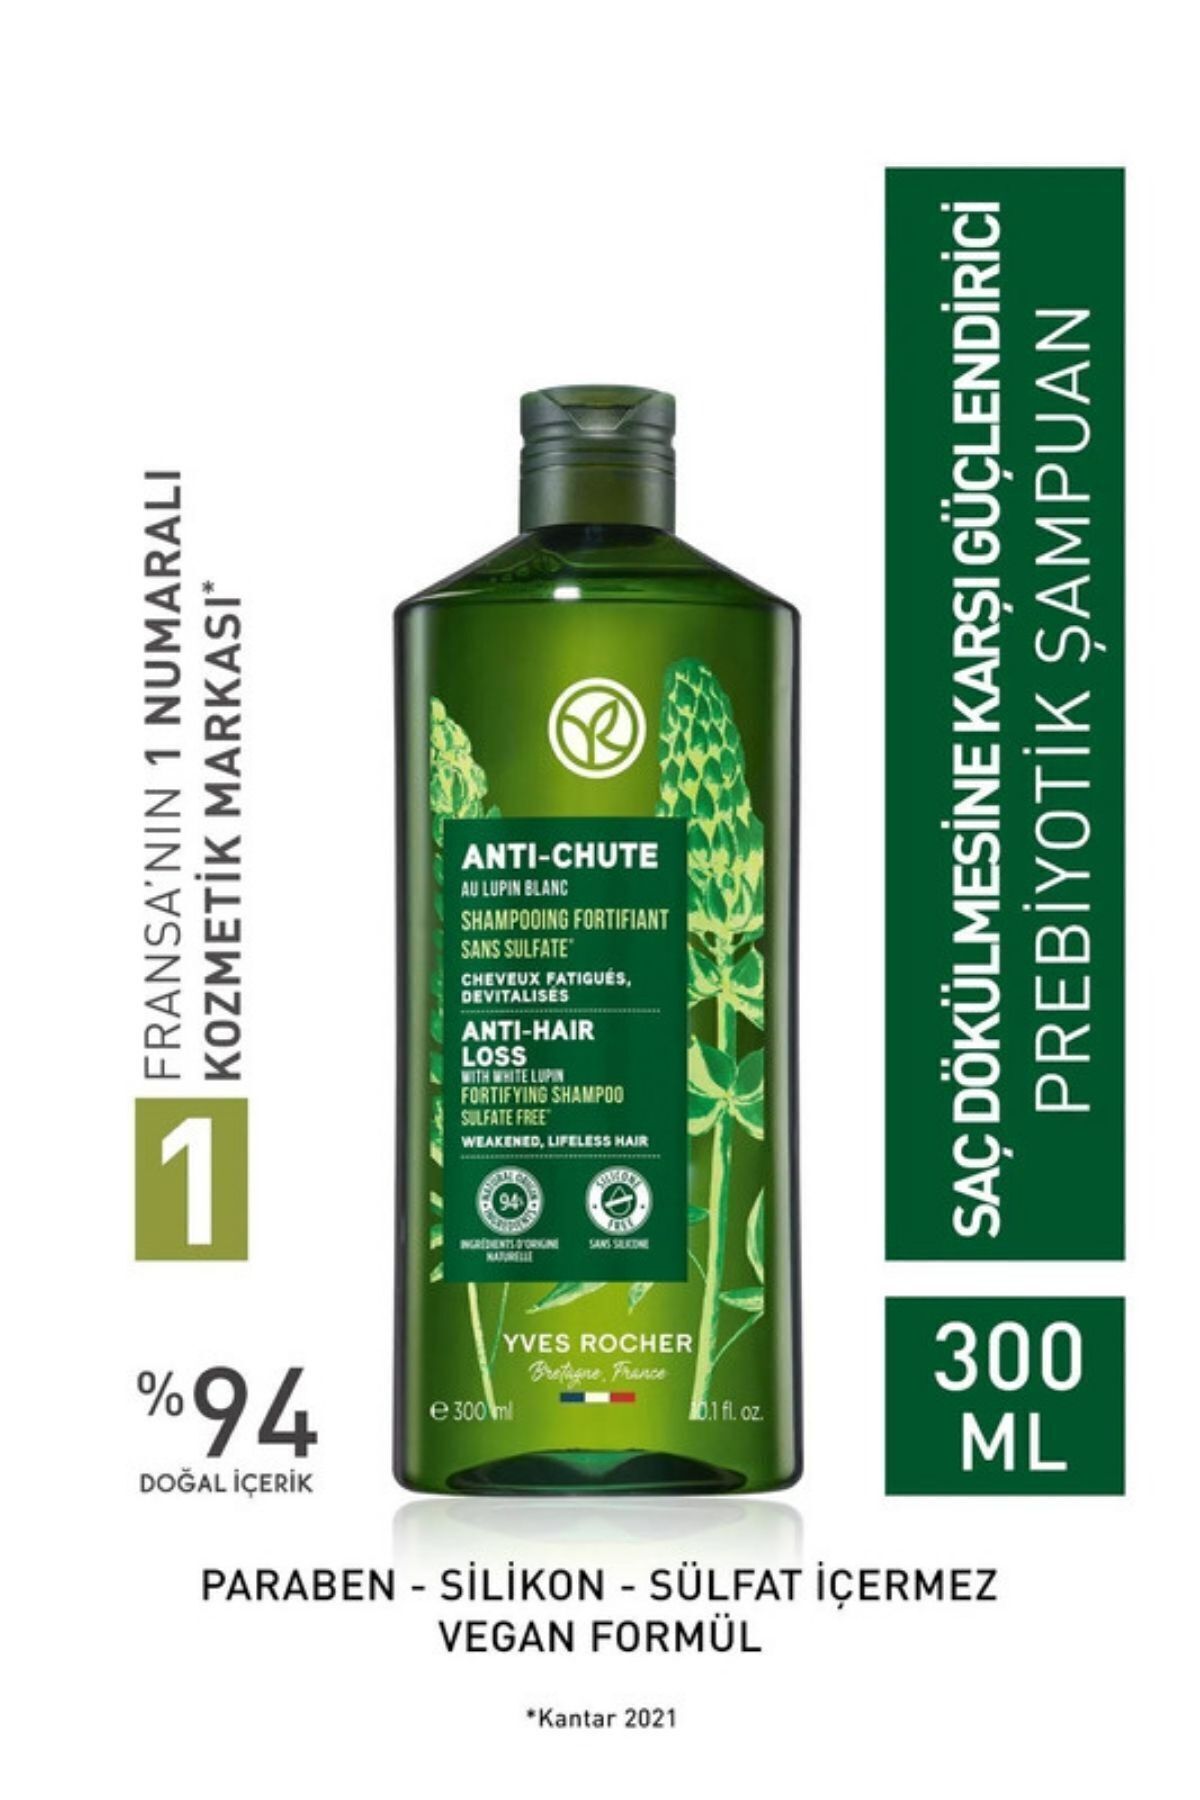 Yves Rocher Saç Dökülmesine Karşı (anti-chute) Güçlendirici Prebiyotik Şampuan - Sülfatsız &-300 Ml